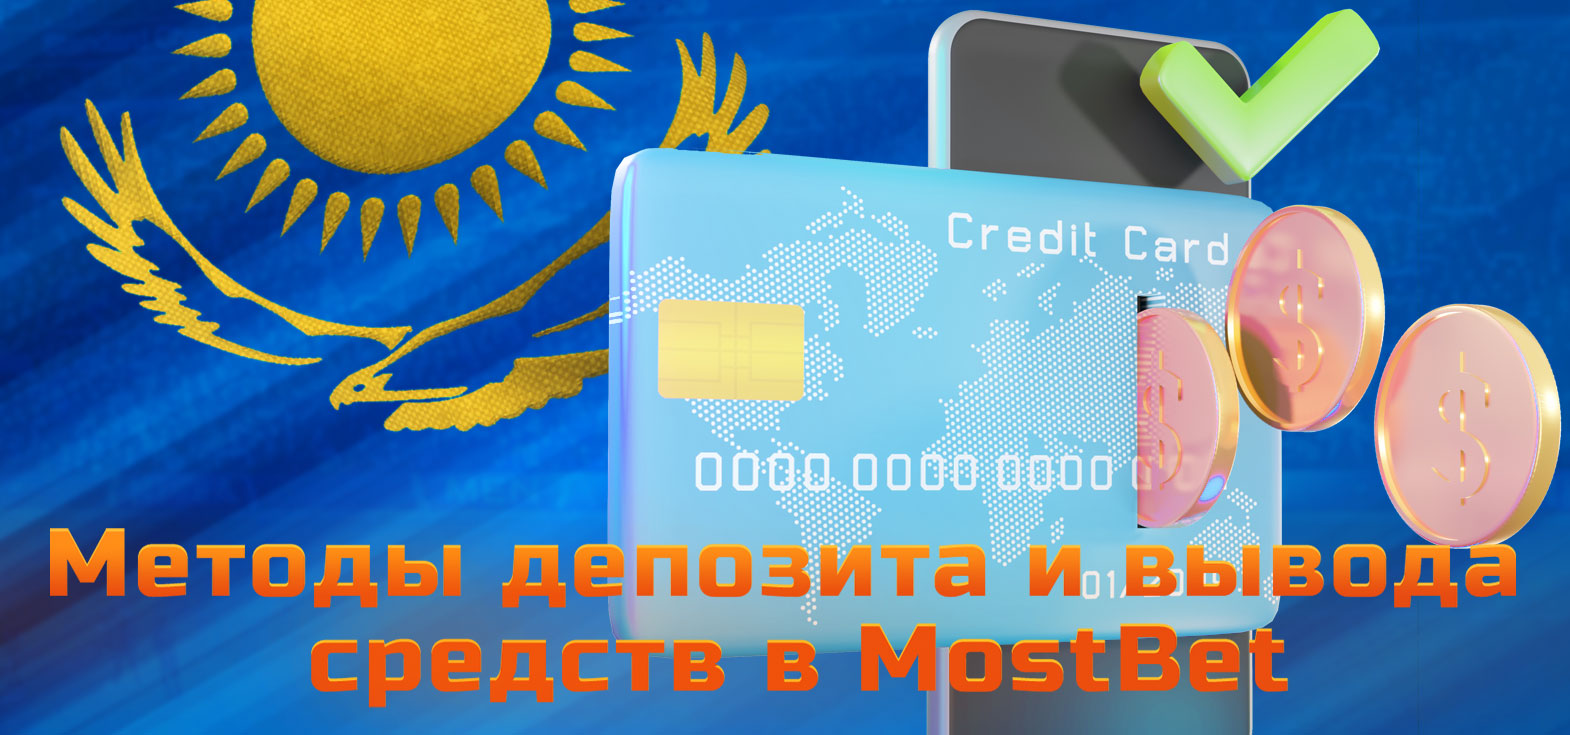 Все доступные методы пополнения и вывода денег с игрового счёта Mostbet для игроков из Кахахстана.